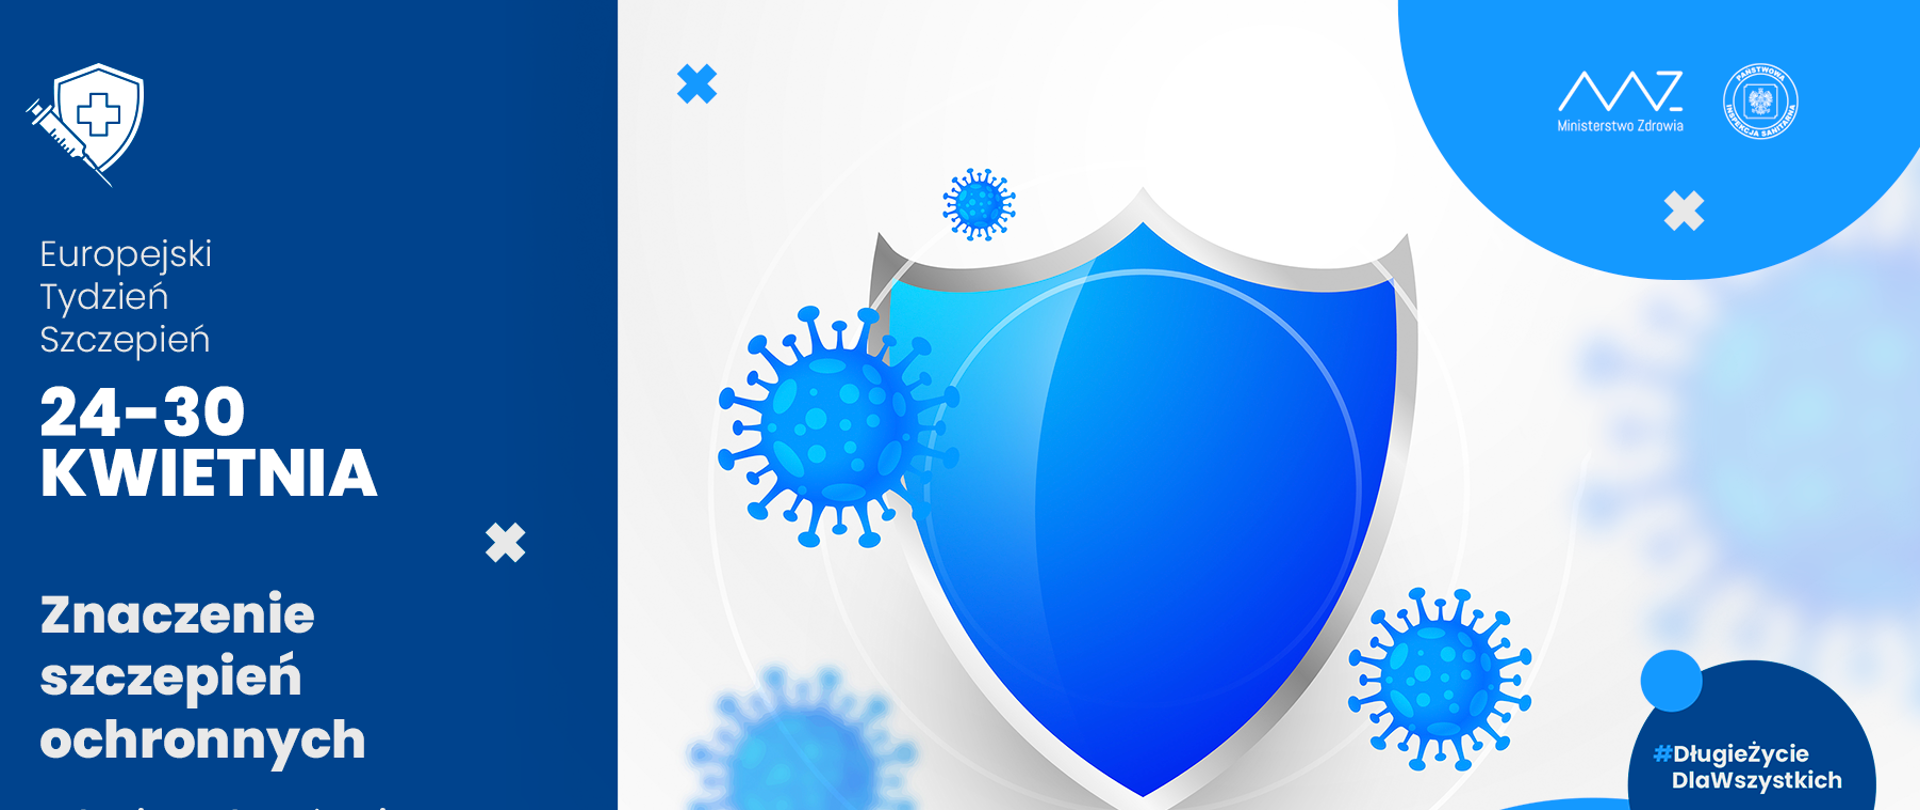 Grafika przedstawia Tarczę w kolorze niebieskim chroniącą przed wirusami. Po lewej stronie grafiki napis "Europejski Tydzień Szczepień 24-30 Kwietnia.